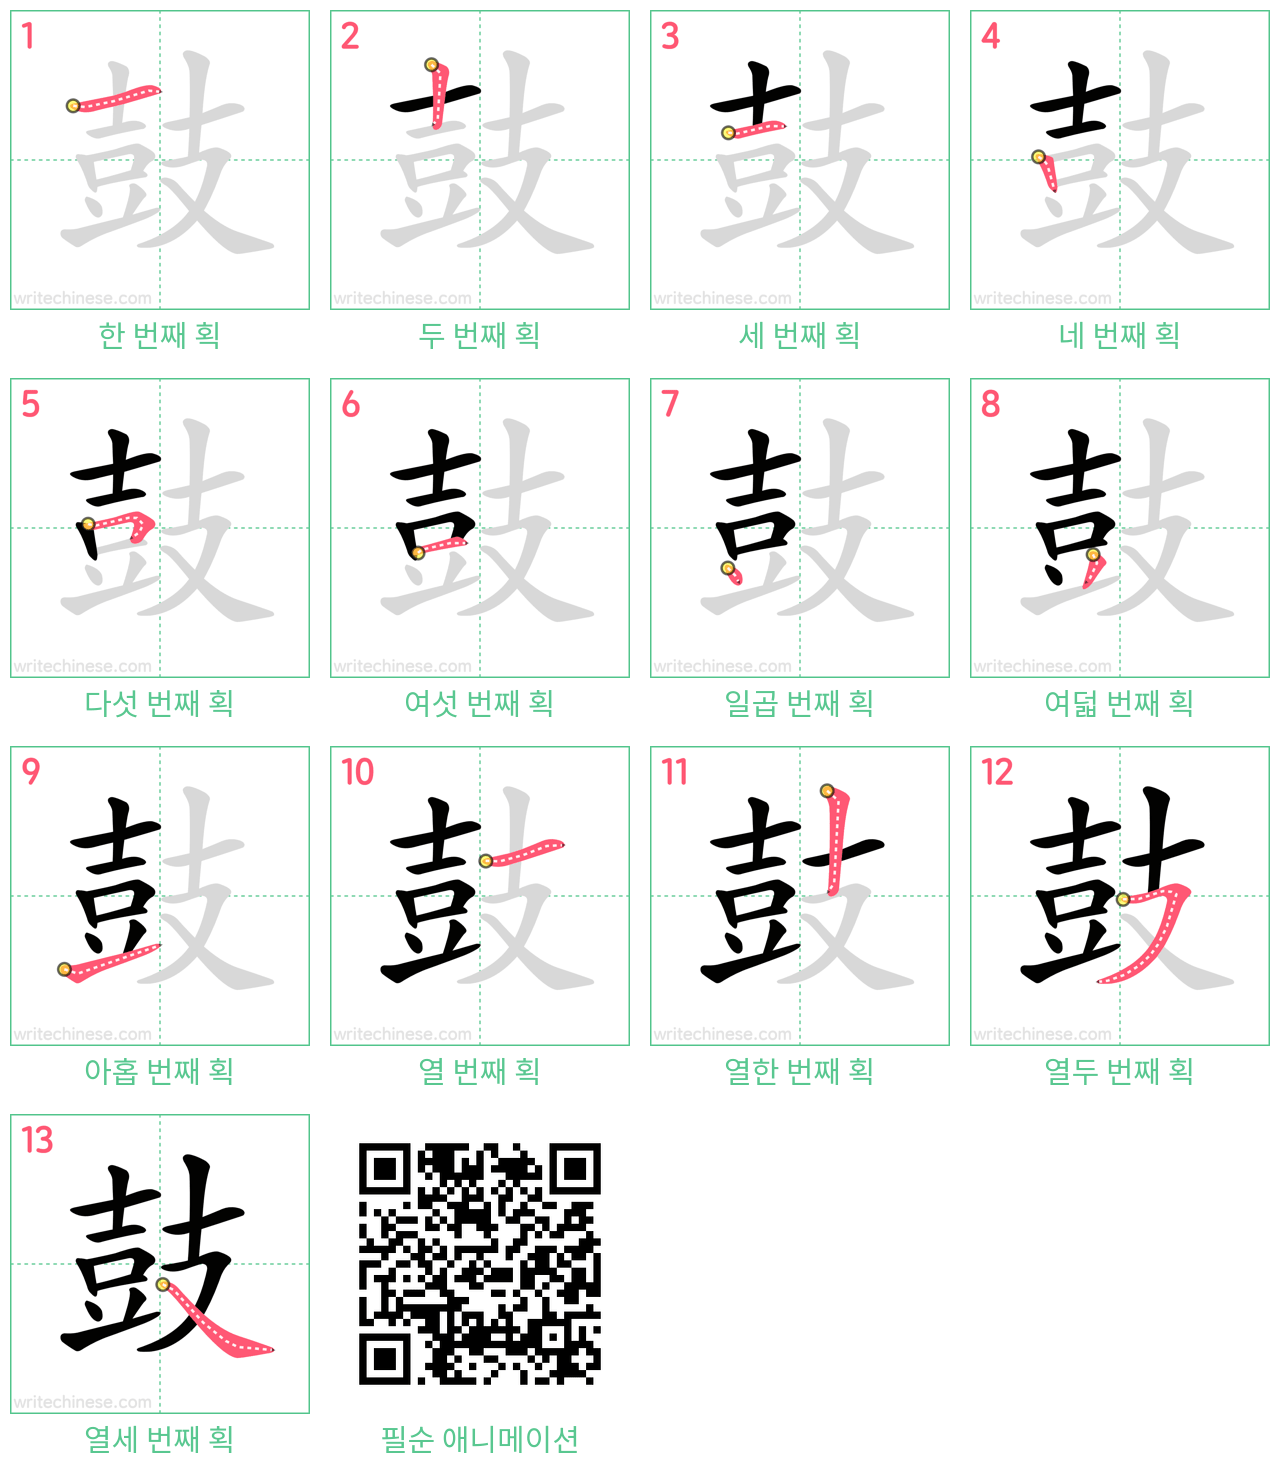 鼓 step-by-step stroke order diagrams